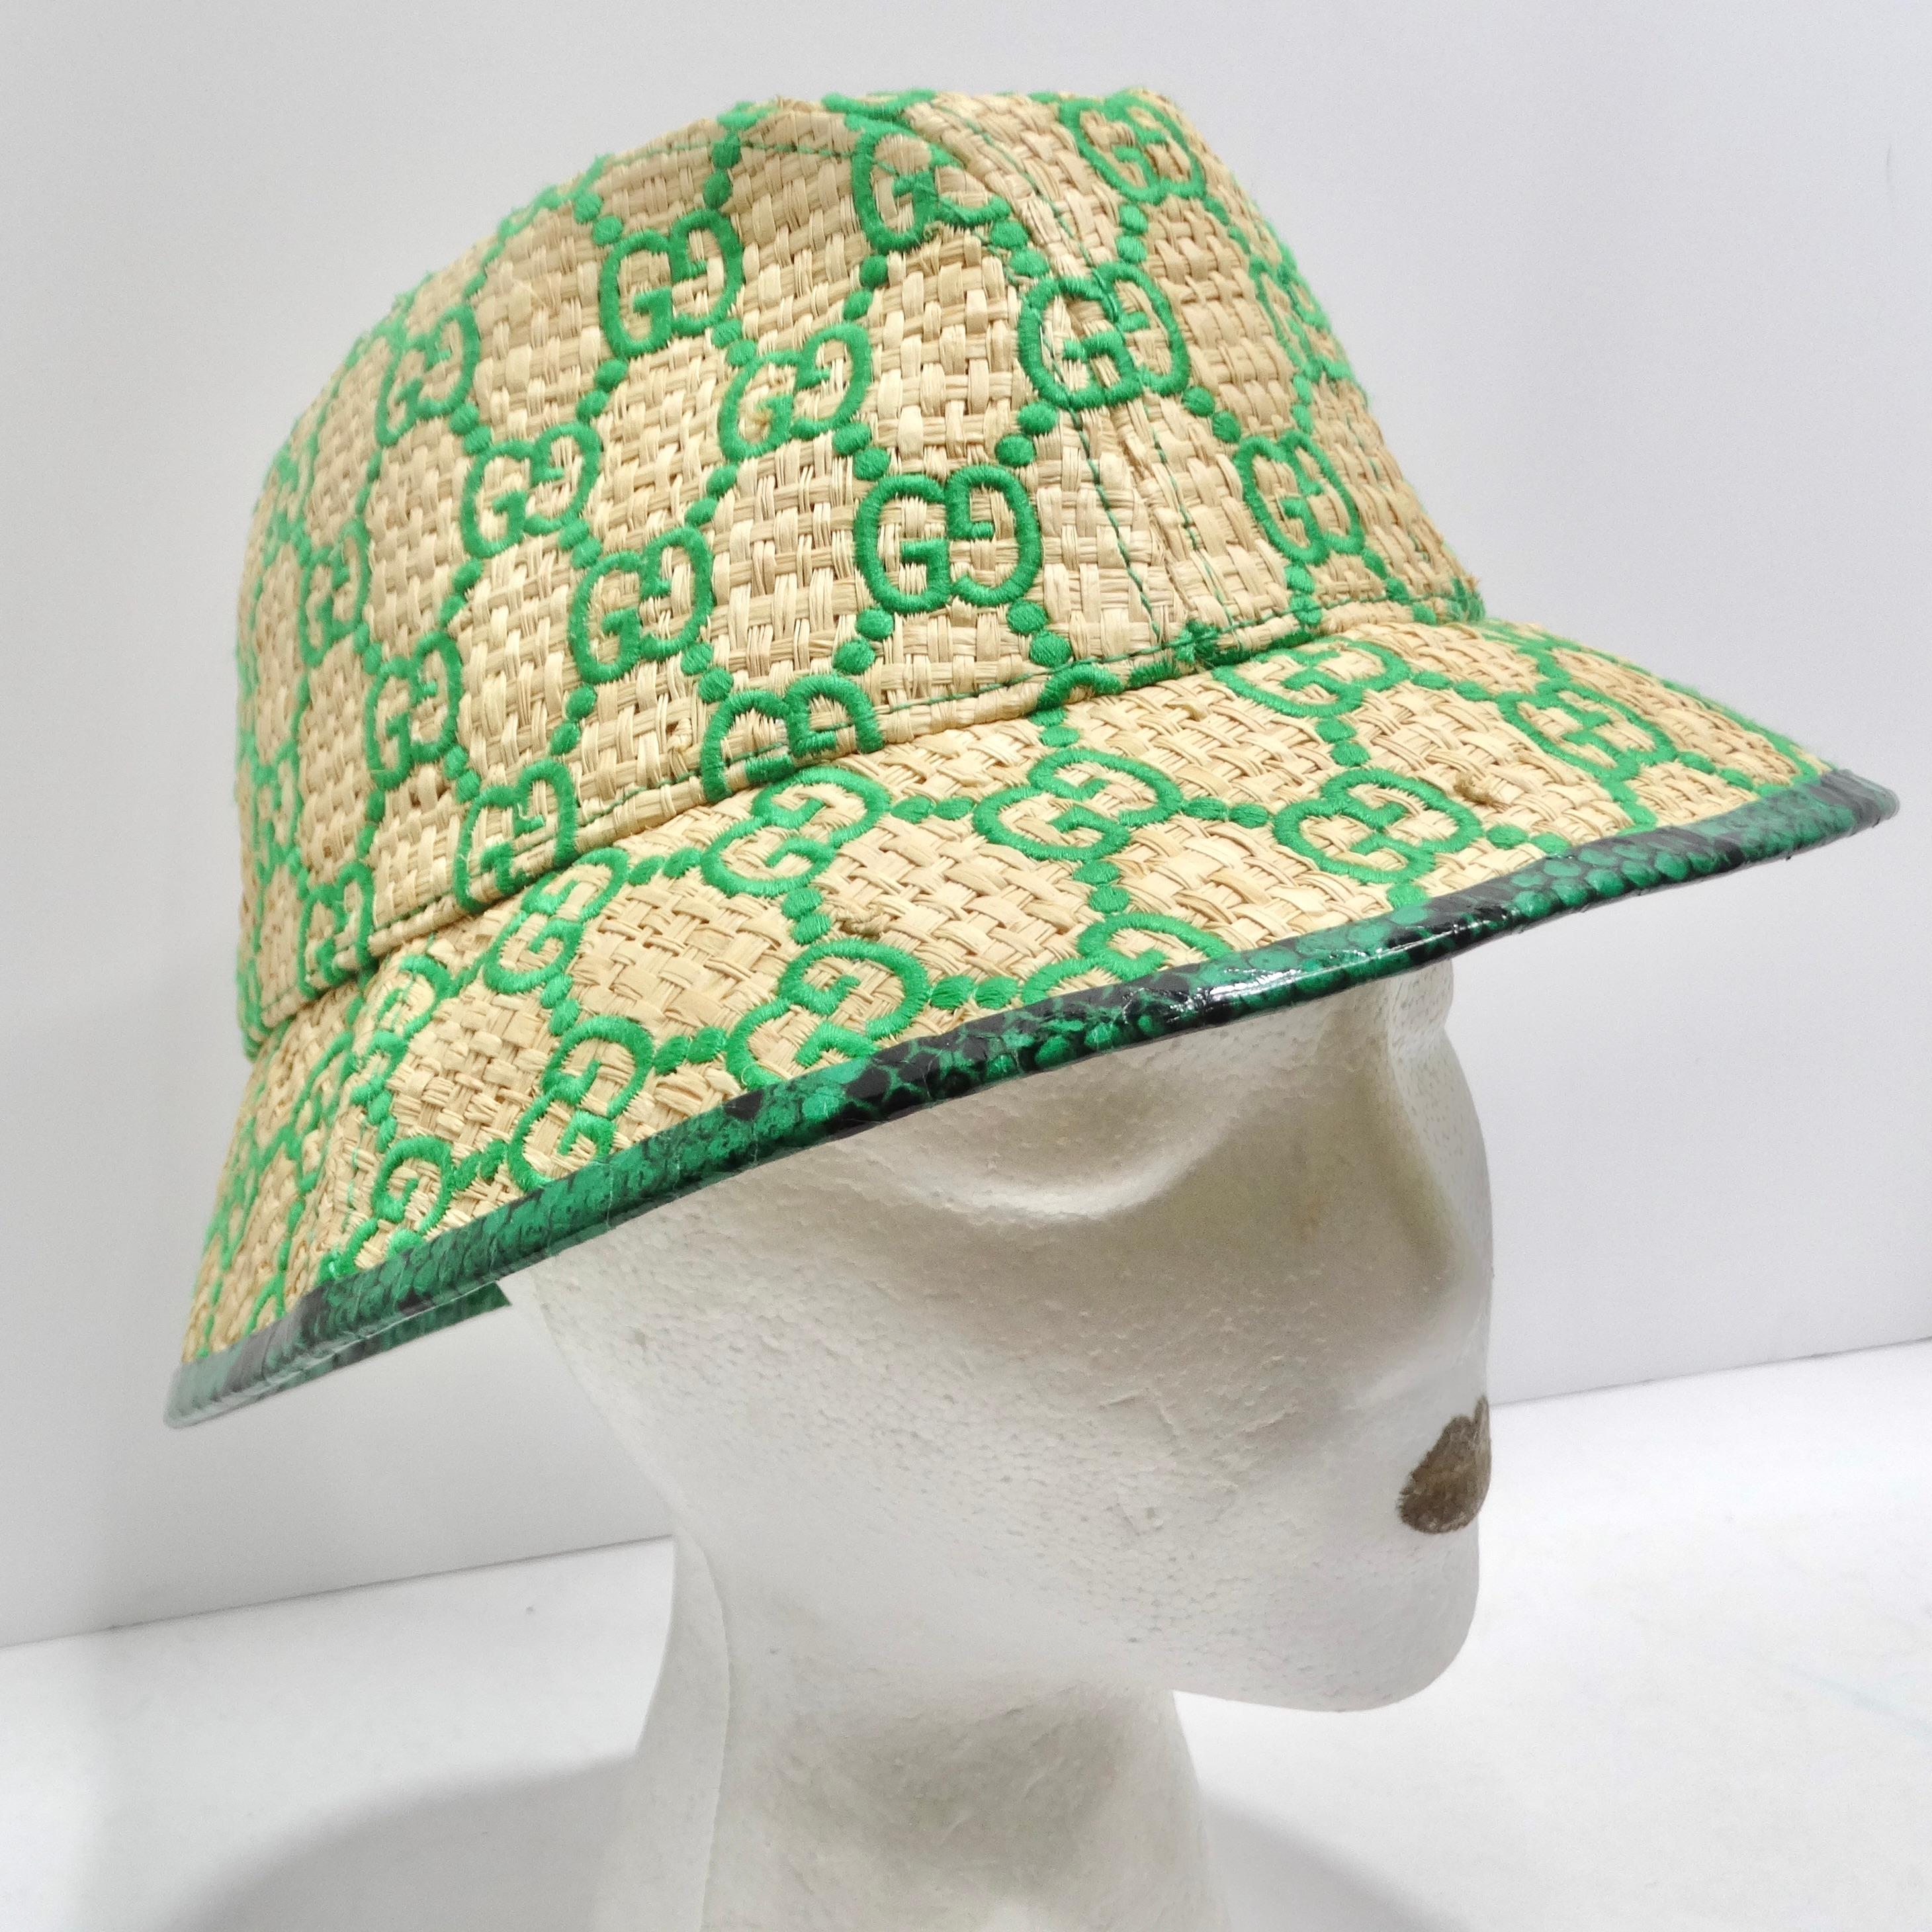 Voici le chapeau à large bord Gucci Raffia Elaphe GG Monogram brodé - une pièce d'exception qui allie harmonieusement le style, le luxe et le charme inimitable de Gucci. Ce chapeau n'est pas seulement un accessoire, c'est aussi un sujet de